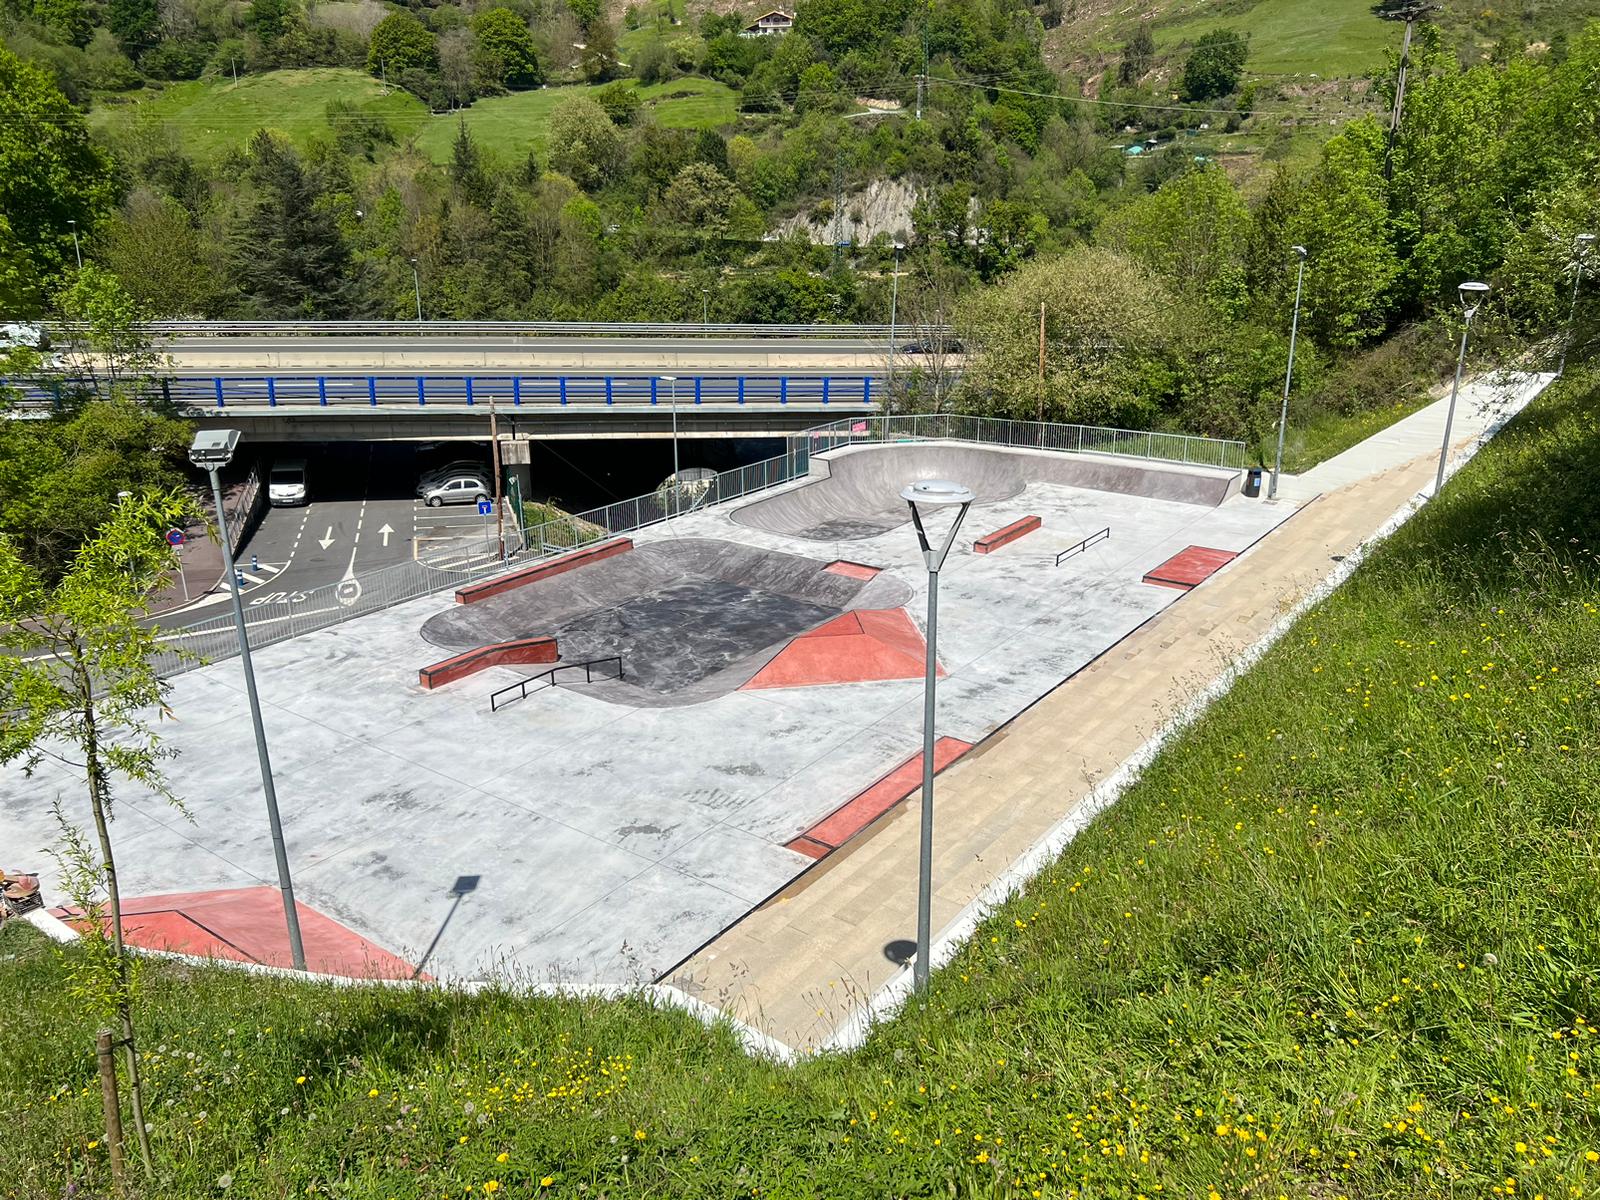 Renovado el skate park de Sautxi tras una inversión de 246.675 euros y con la participación directa de las personas usuarias en el proyecto